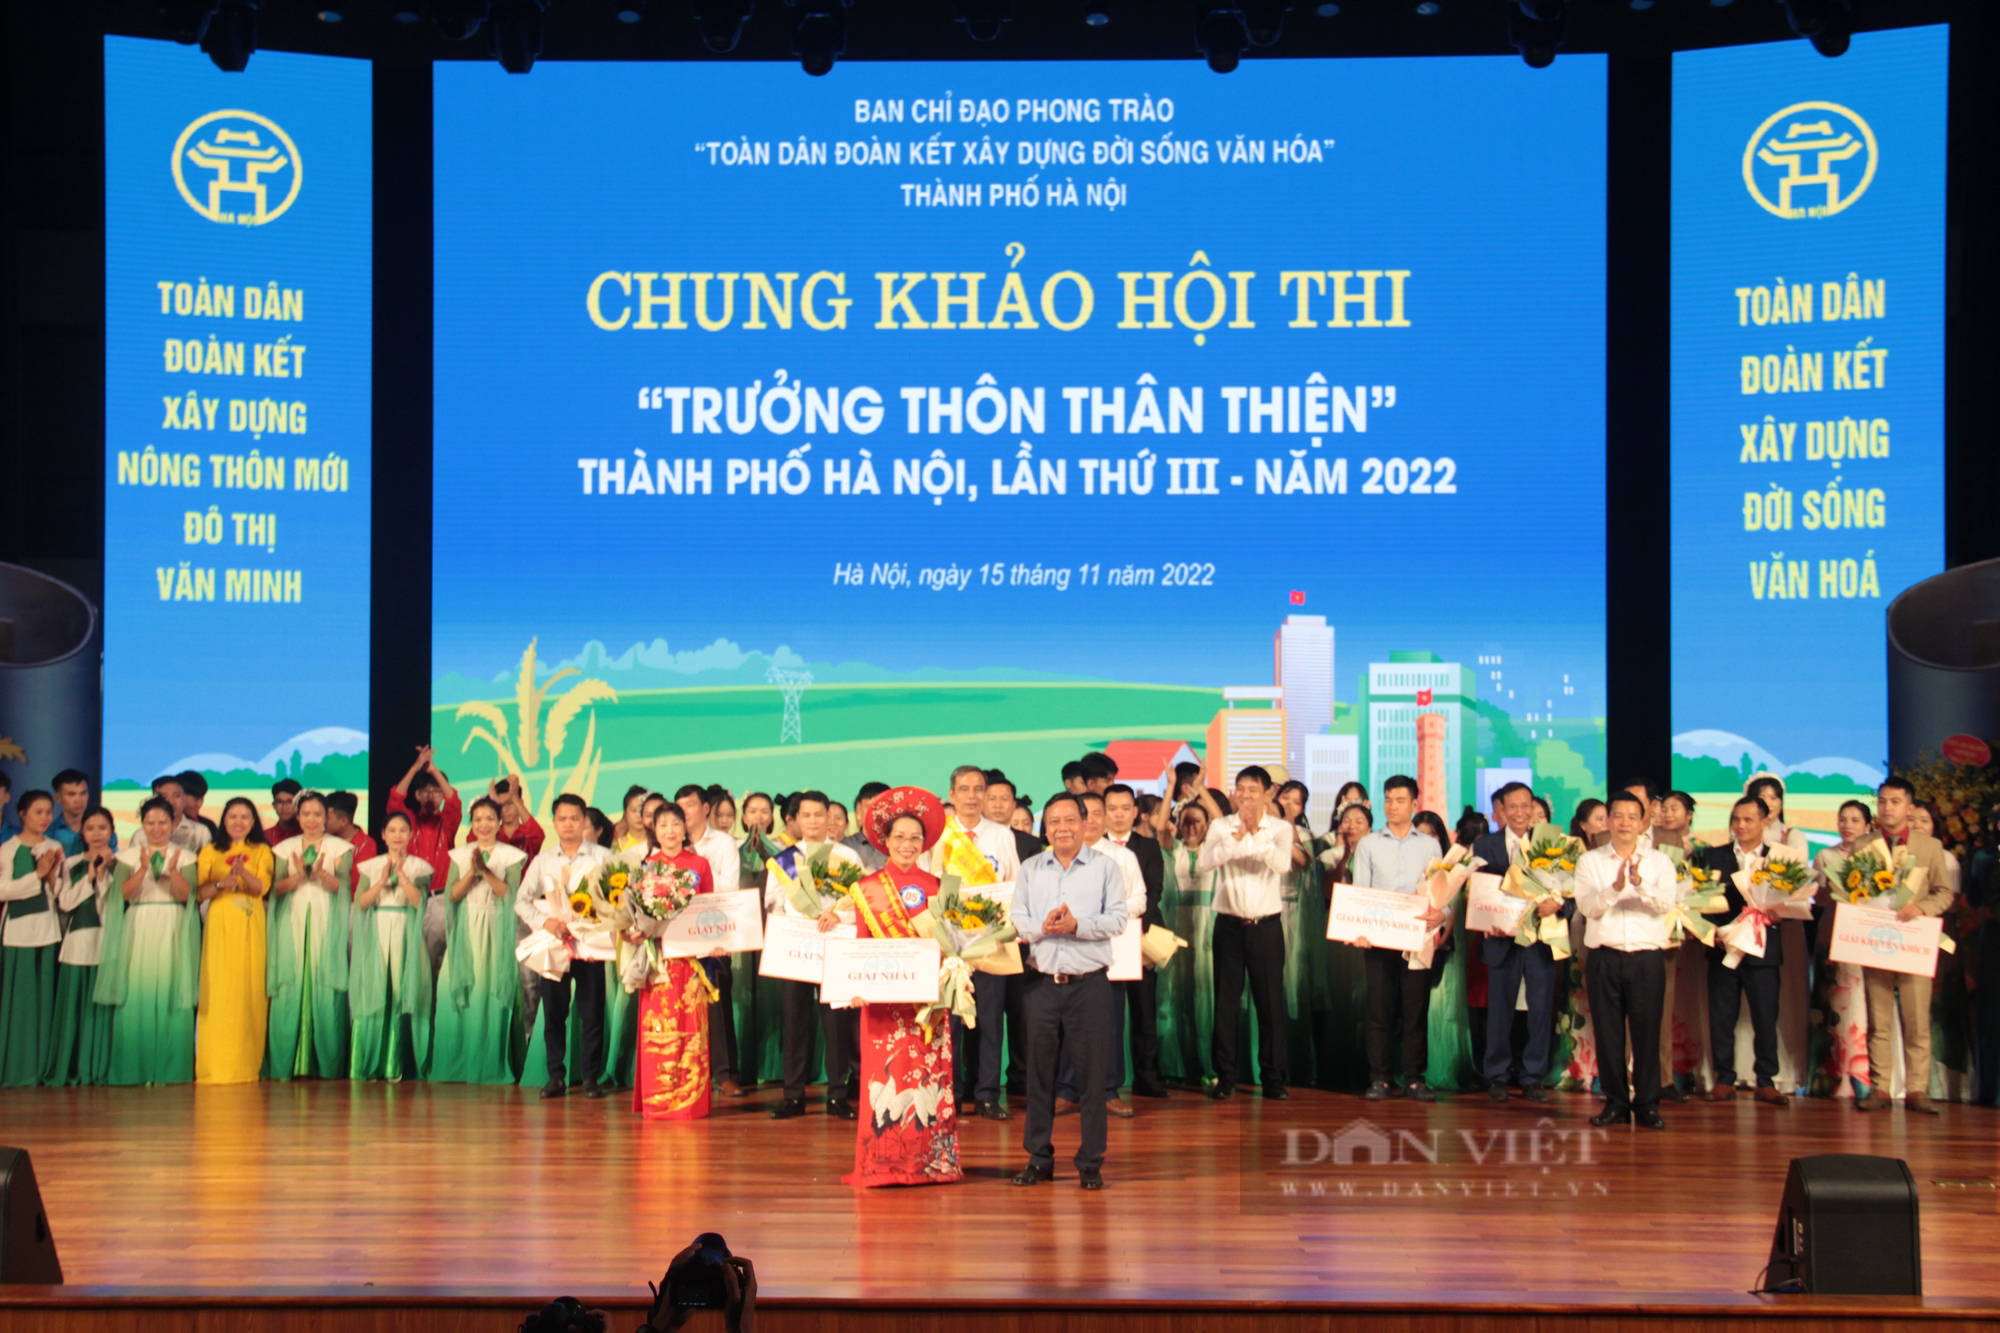 Tiết lộ thú vị về vòng chung khảo Hội thi “Trưởng thôn thân thiện” Hà Nội năm 2022 - Ảnh 6.